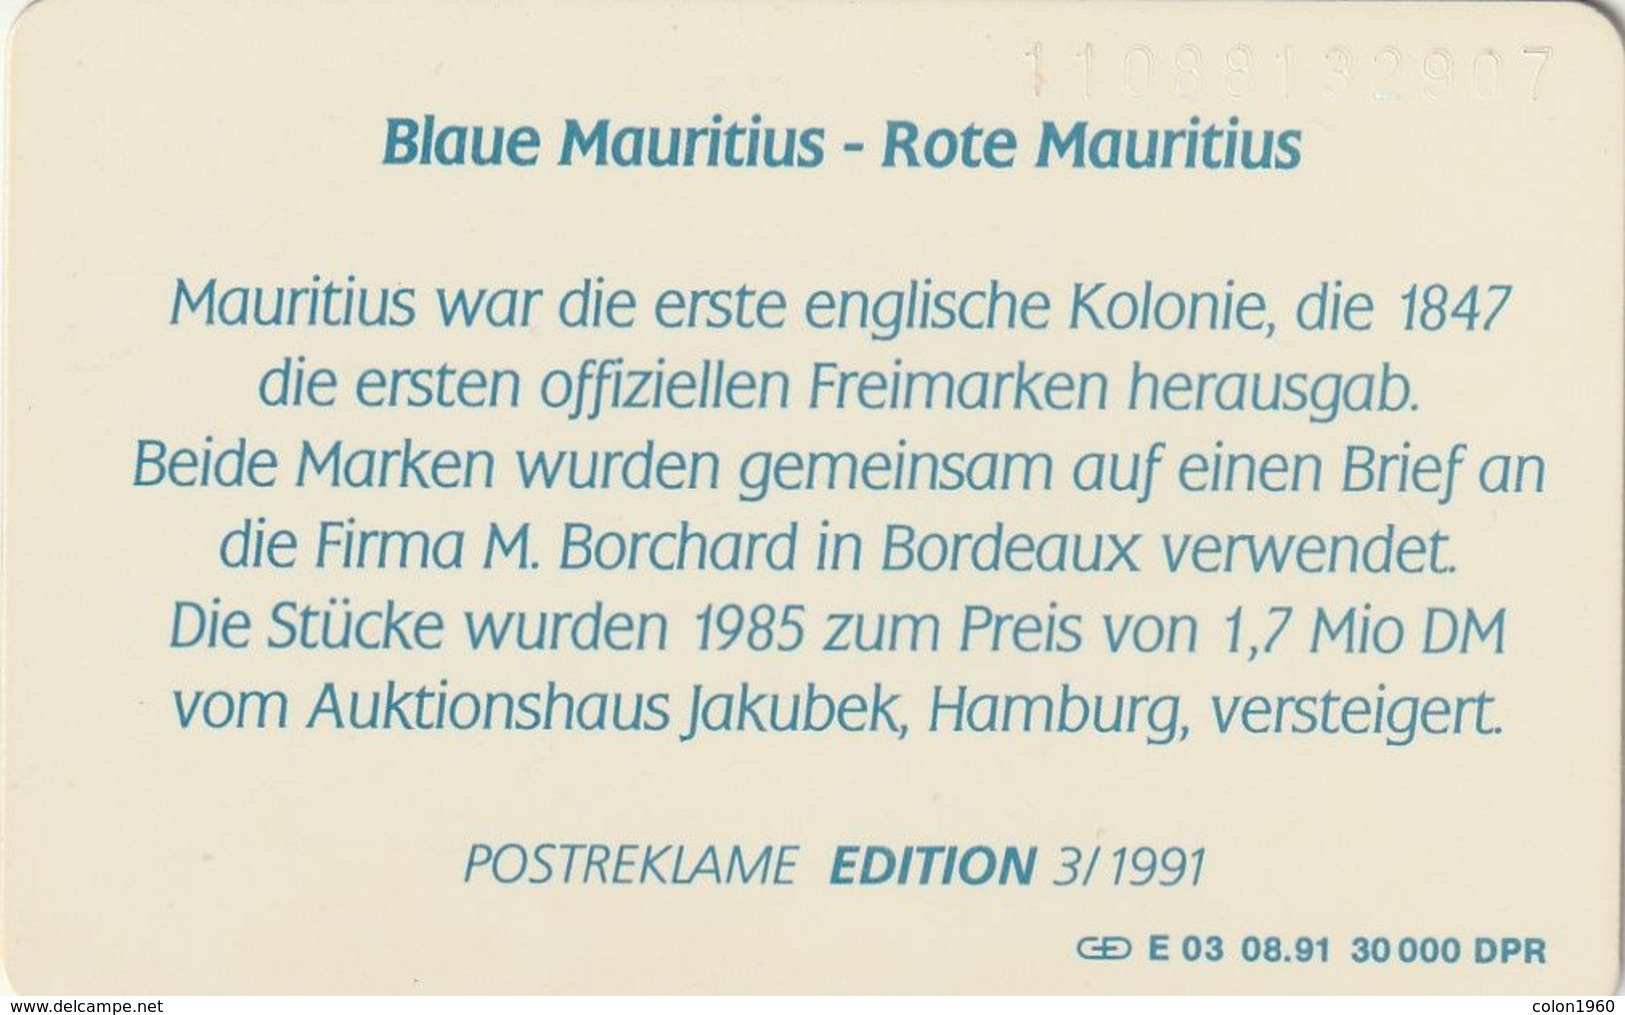 ALEMANIA. Postage Stamps 3 - Blue Mauritius + Red Mauritius. DE-E 03/91. (491) - E-Series : Edition - D. Postreklame